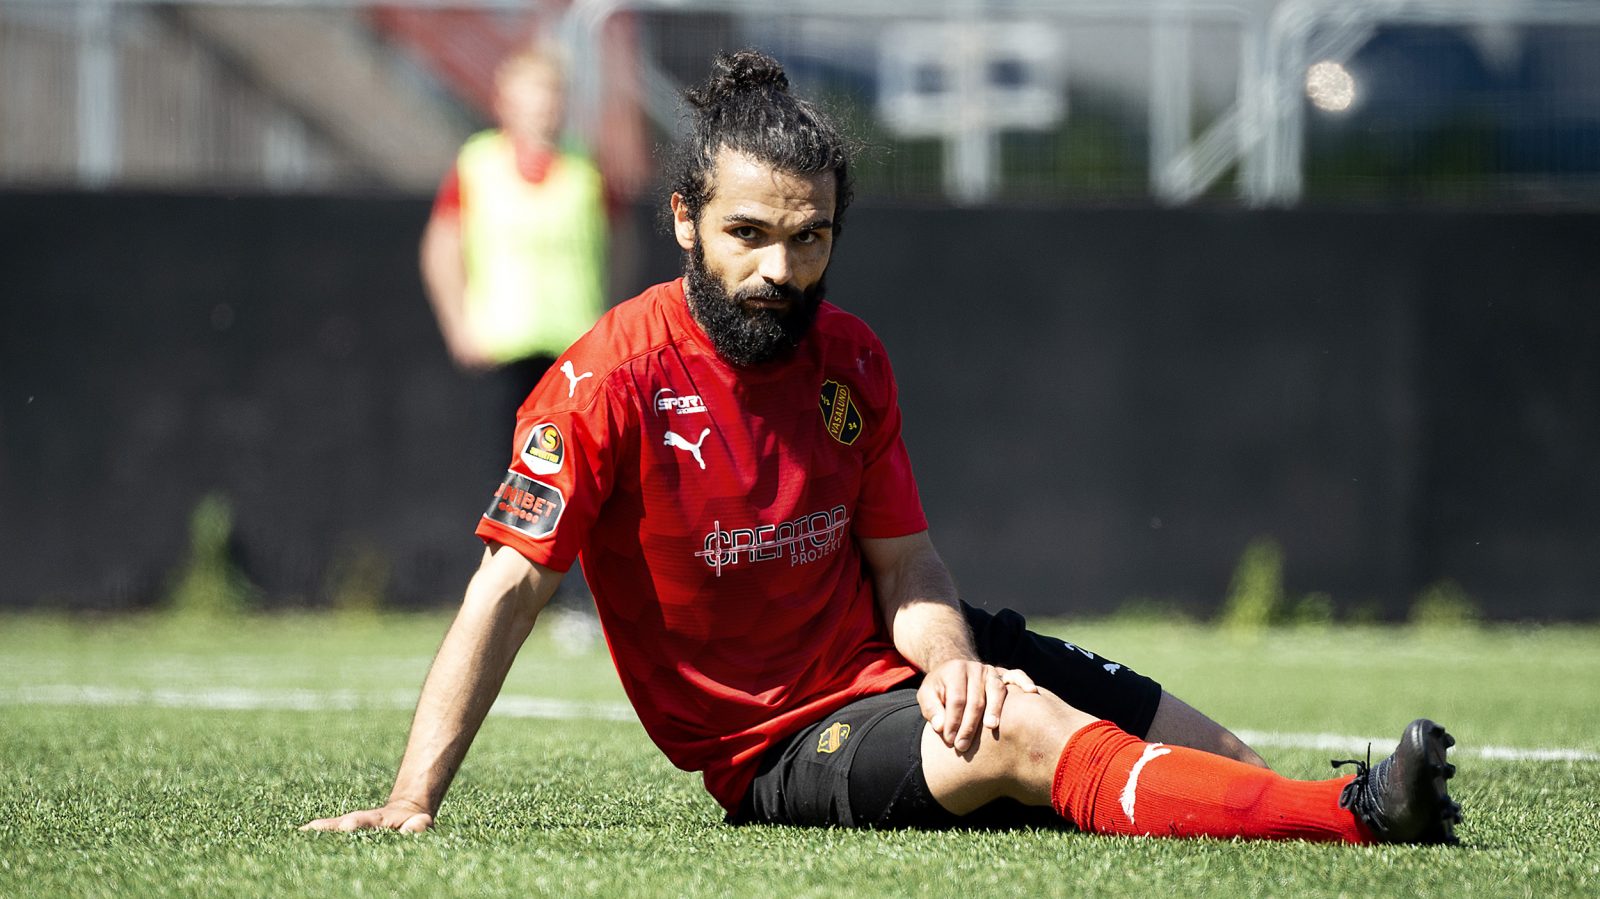 Peshraw Azizi, Vasalund, sitter på gräset under en match i Superettan